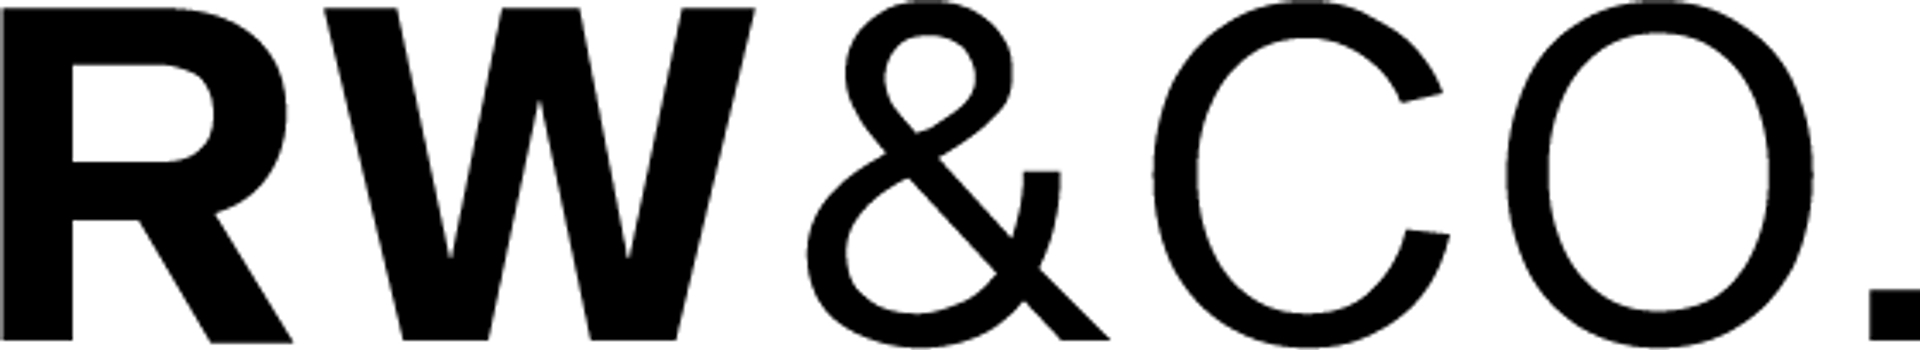 RW&CO logo de circulaire